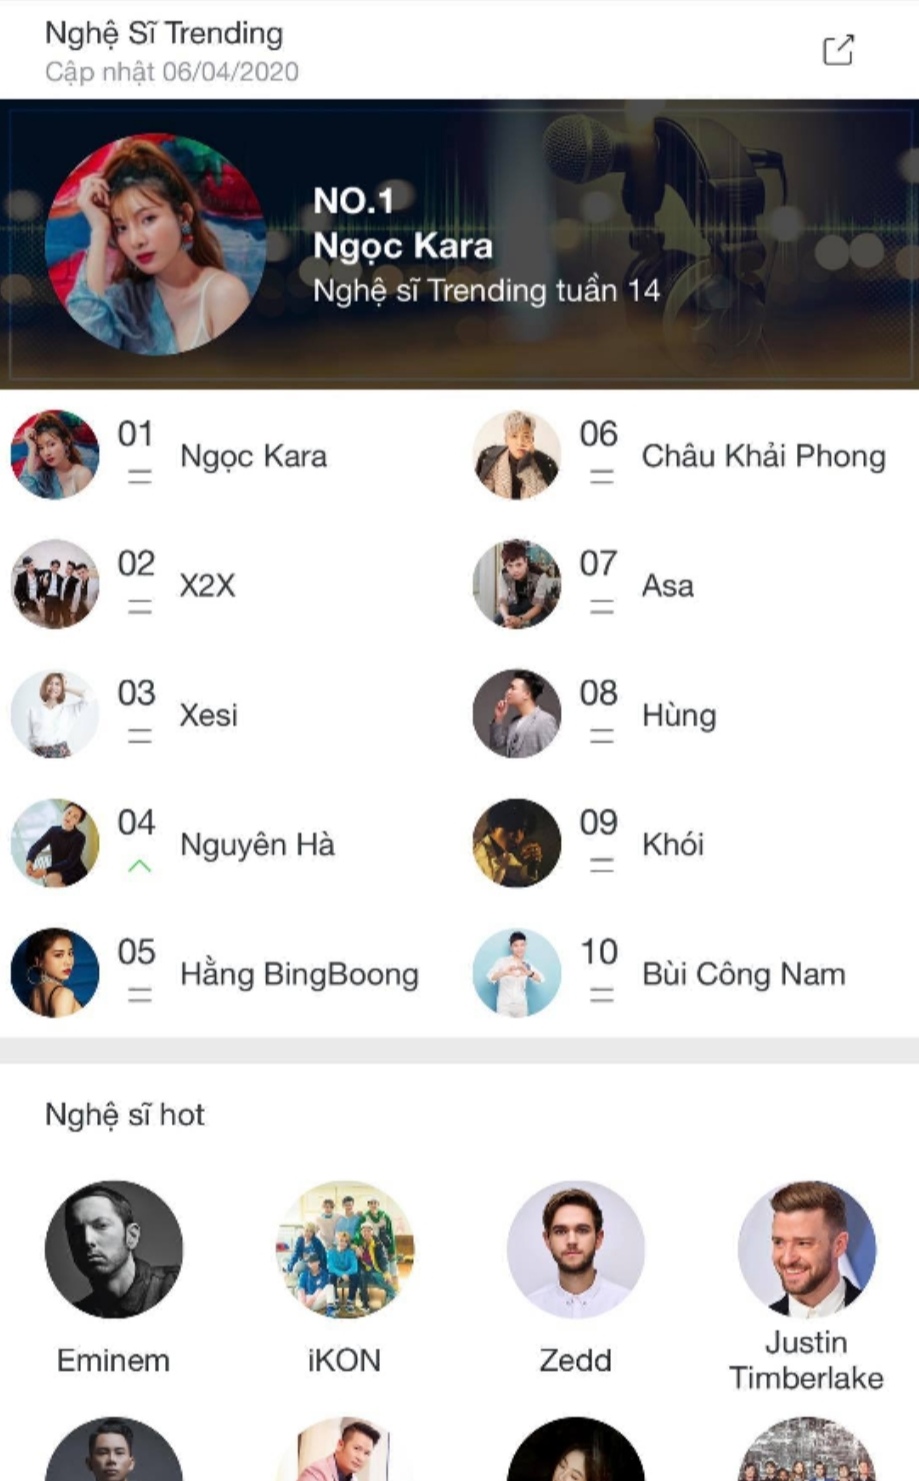 Screenshot 20200406 220423 Ngọc Kara vượt X2X đầy ngoạn mục lọt top 1 nghệ sĩ trending